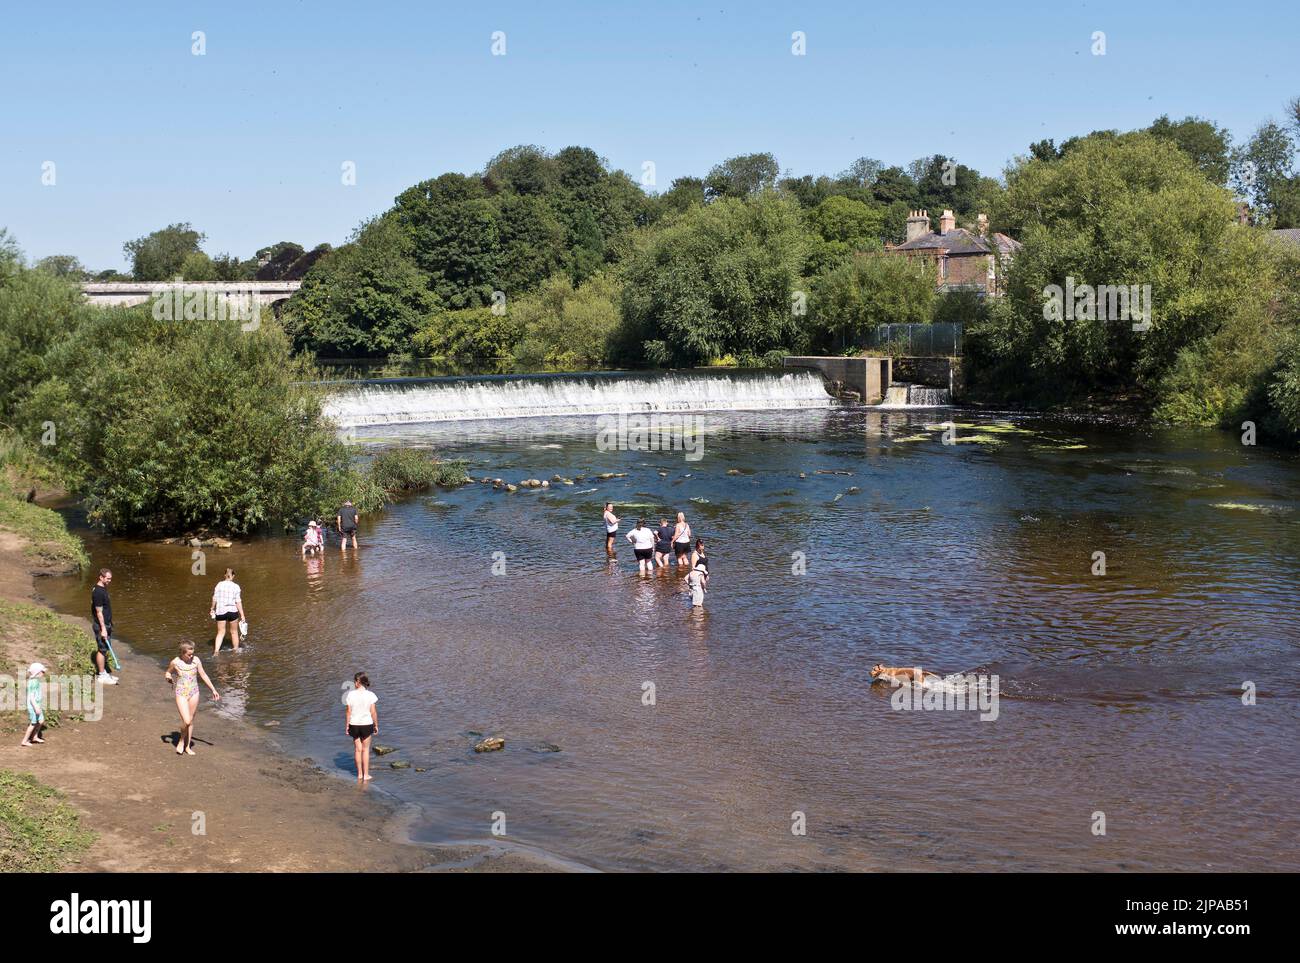 dh River Wharfe TADCASTER YORKSHIRE Familias disfrutando ríos agua perros niños remar verano gente río niños nadar Foto de stock